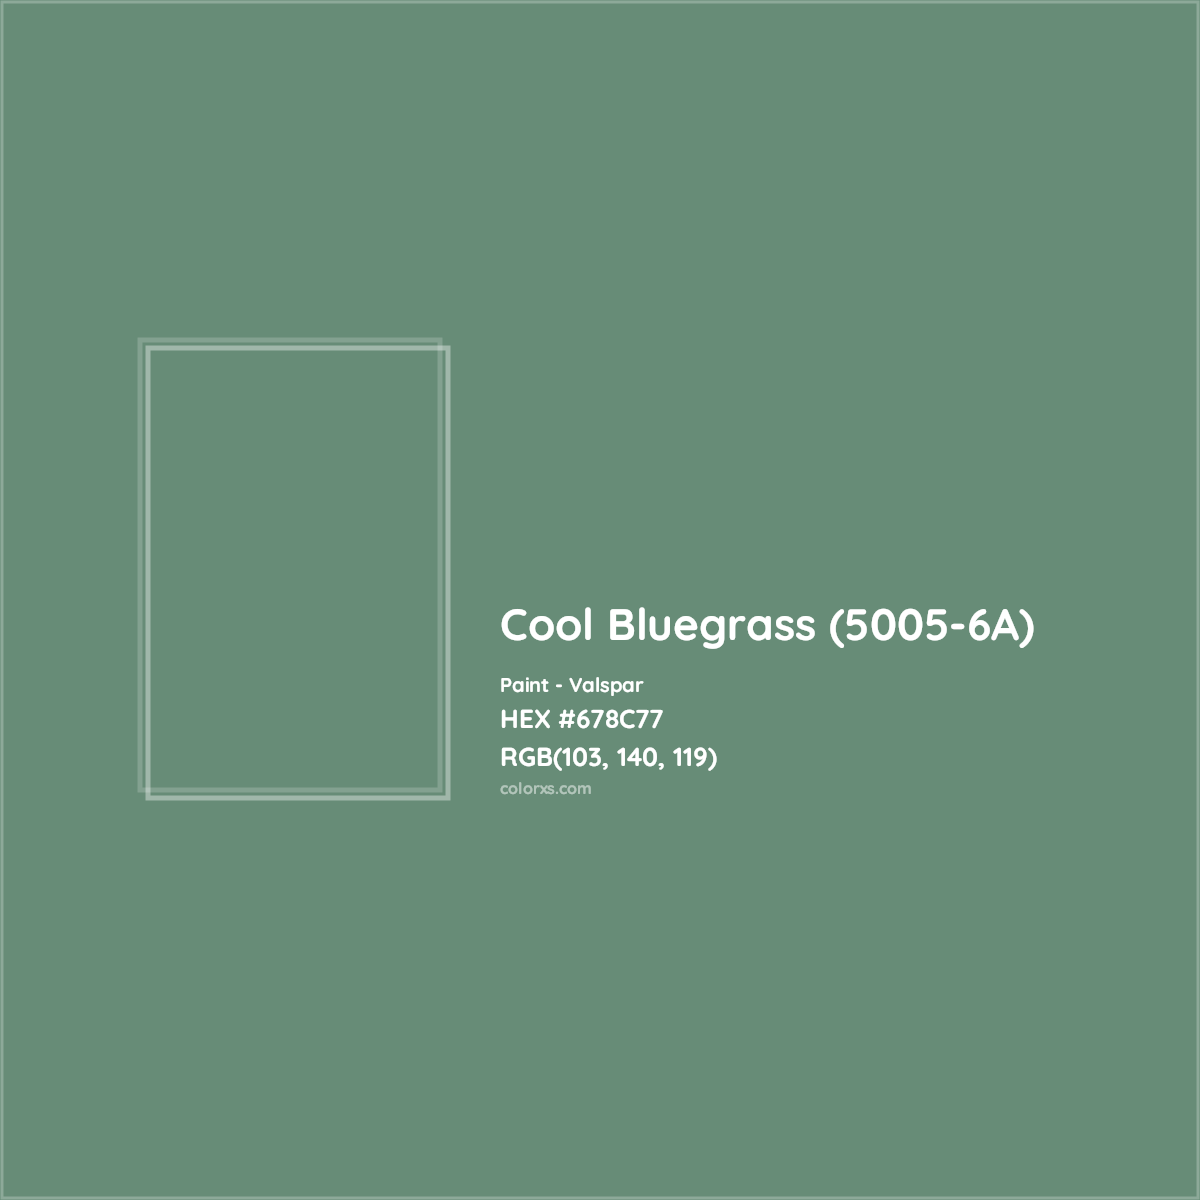 HEX #678C77 Cool Bluegrass (5005-6A) Paint Valspar - Color Code